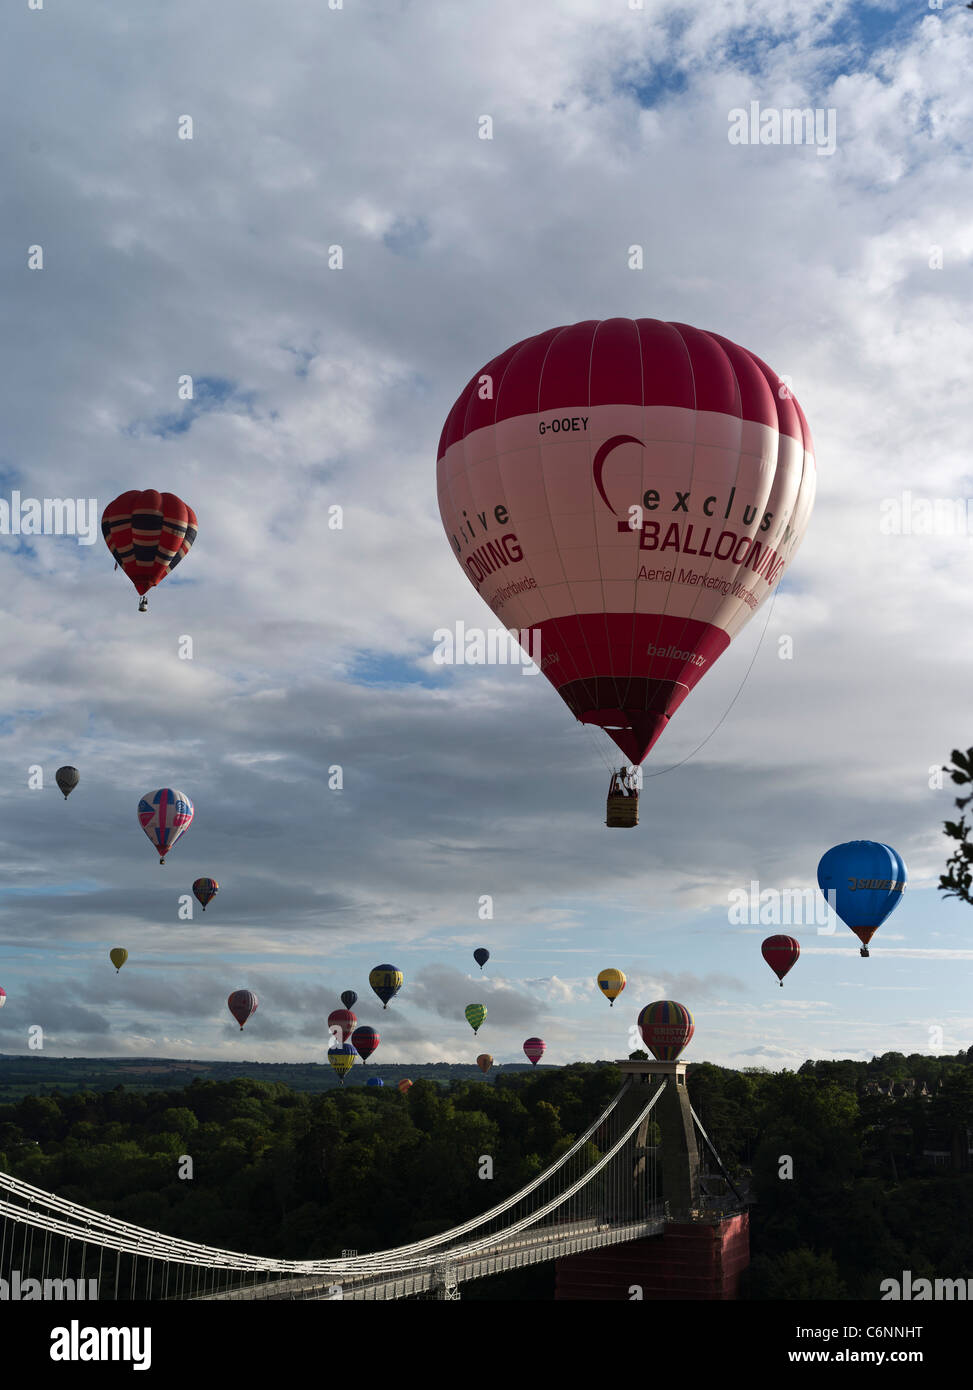 dh Bristol Balloon Fiesta CLIFTON BRIDGE BRISTOL ENGLAND Balloon Festival Mongolfiere che volano sopra i ponti sospesi in mongolfiera nel regno unito Foto Stock